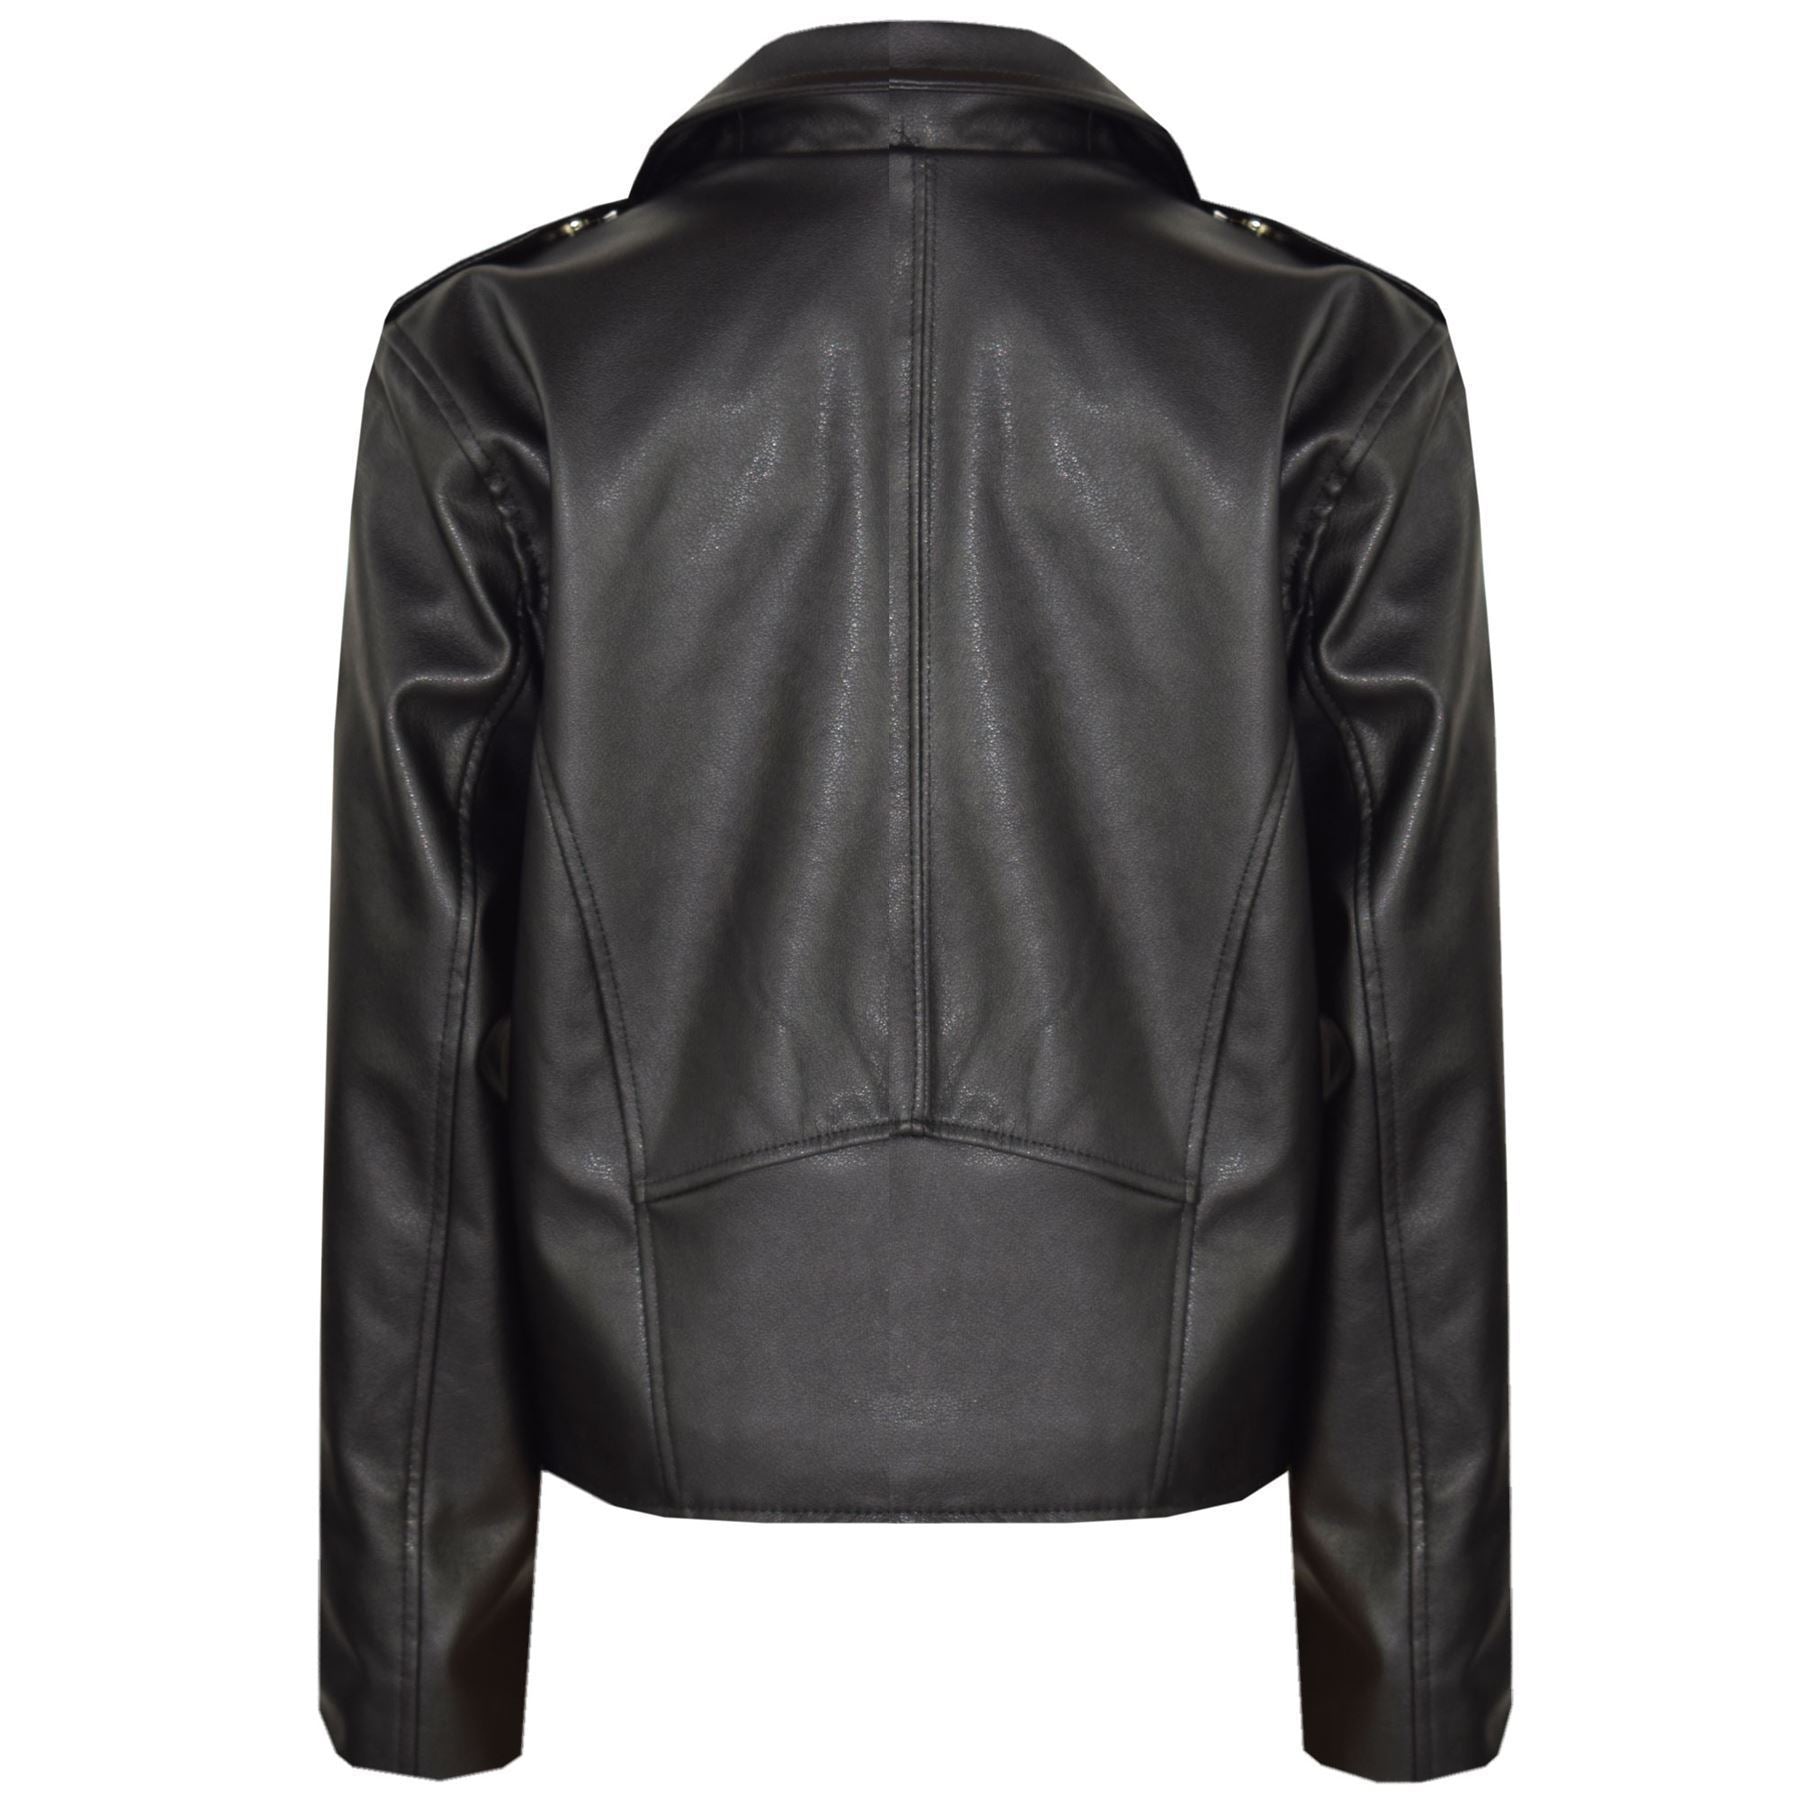 Kids Girls Black Jackets PU Leather Zip Up Biker Coat Overcoats